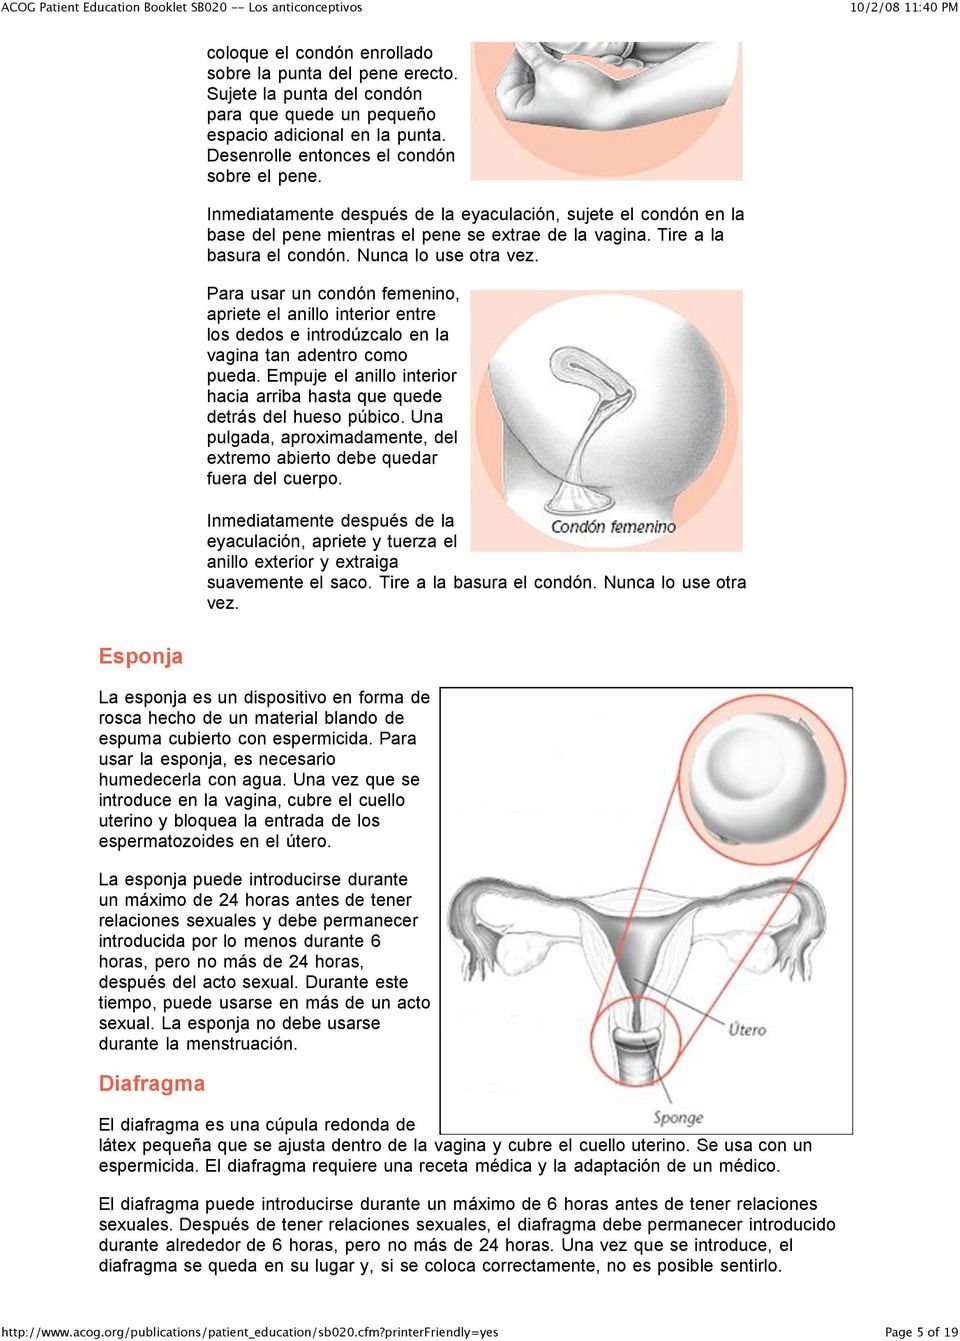 Para usar un condón femenino, apriete el anillo interior entre los dedos e introdúzcalo en la vagina tan adentro como pueda.